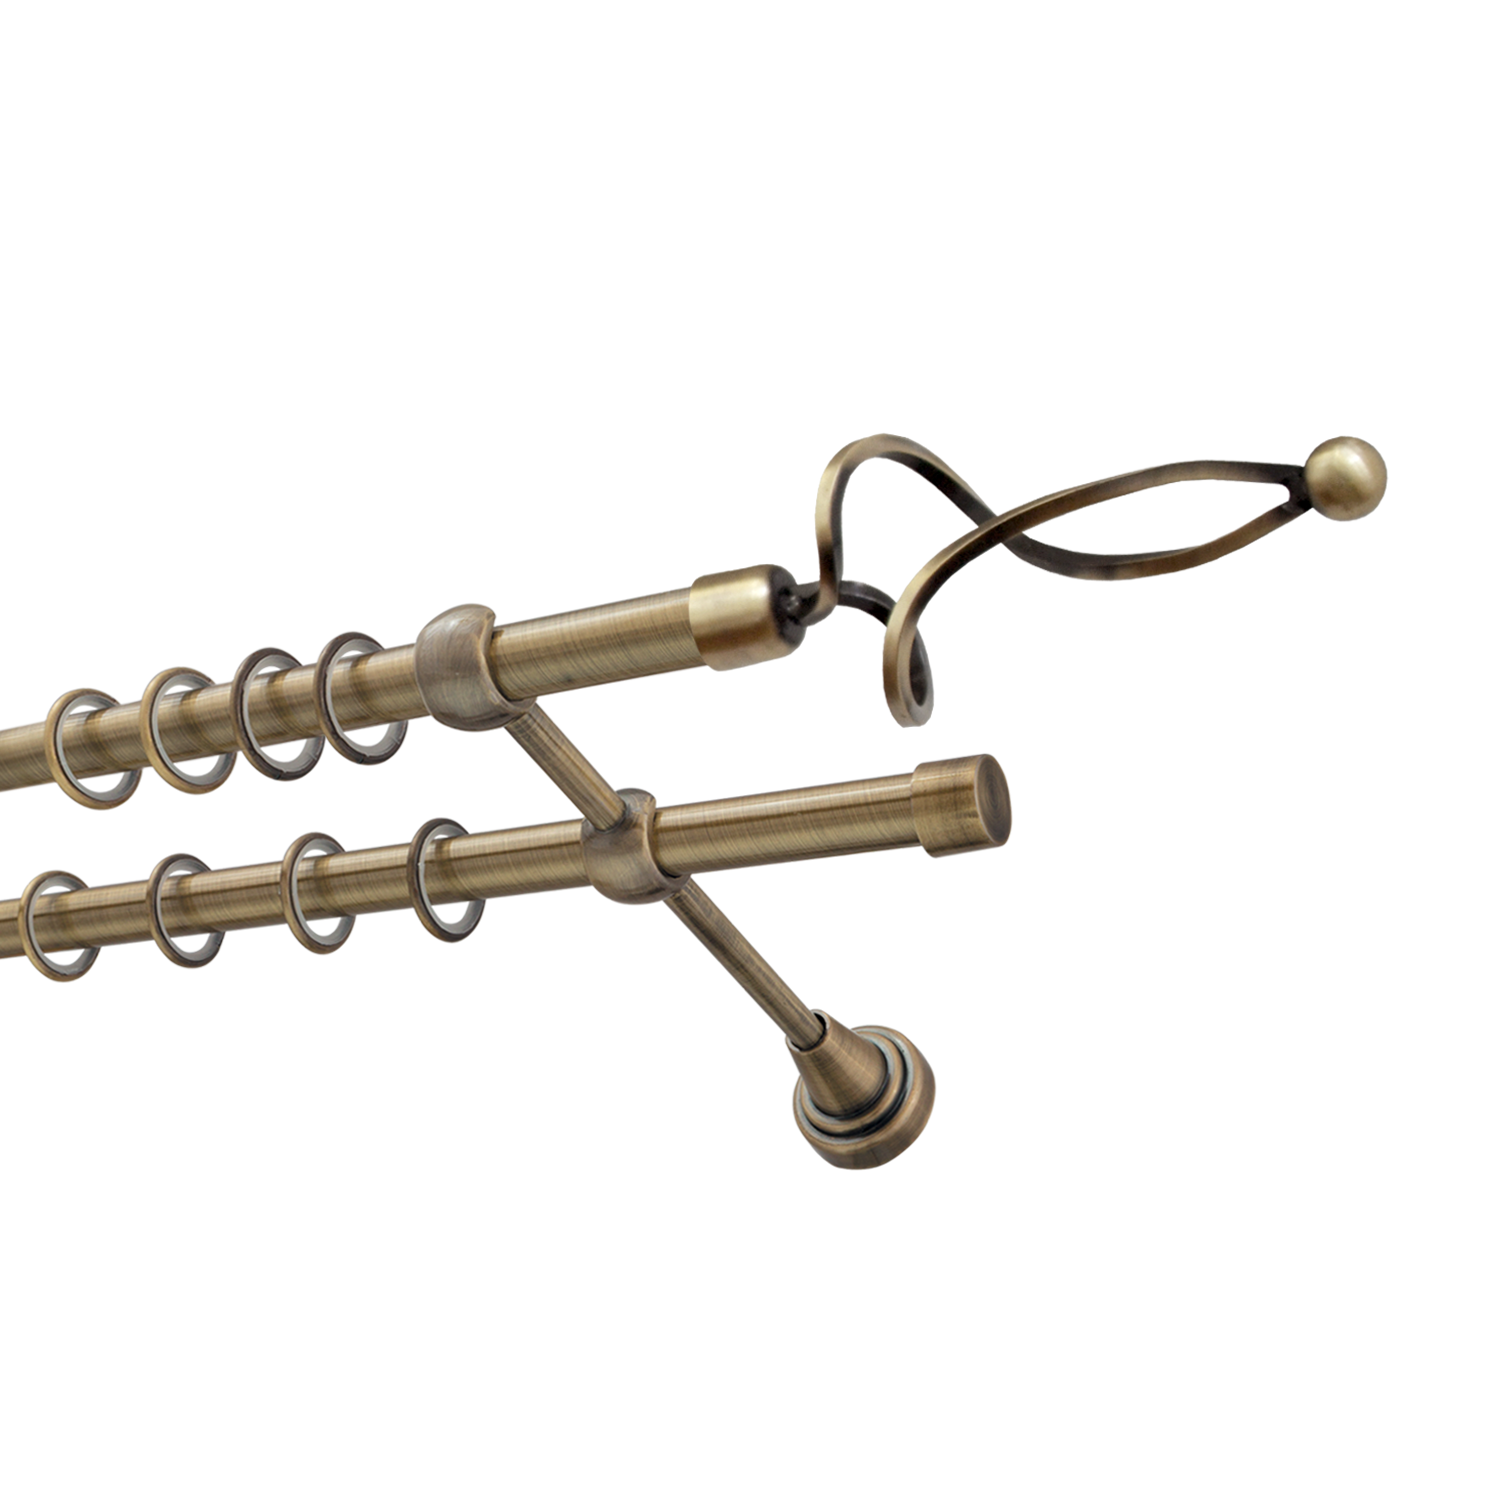 Металлический карниз для штор Жемчужина, двухрядный 16/16 мм, бронза, гладкая штанга, длина 240 см - фото Wikidecor.ru